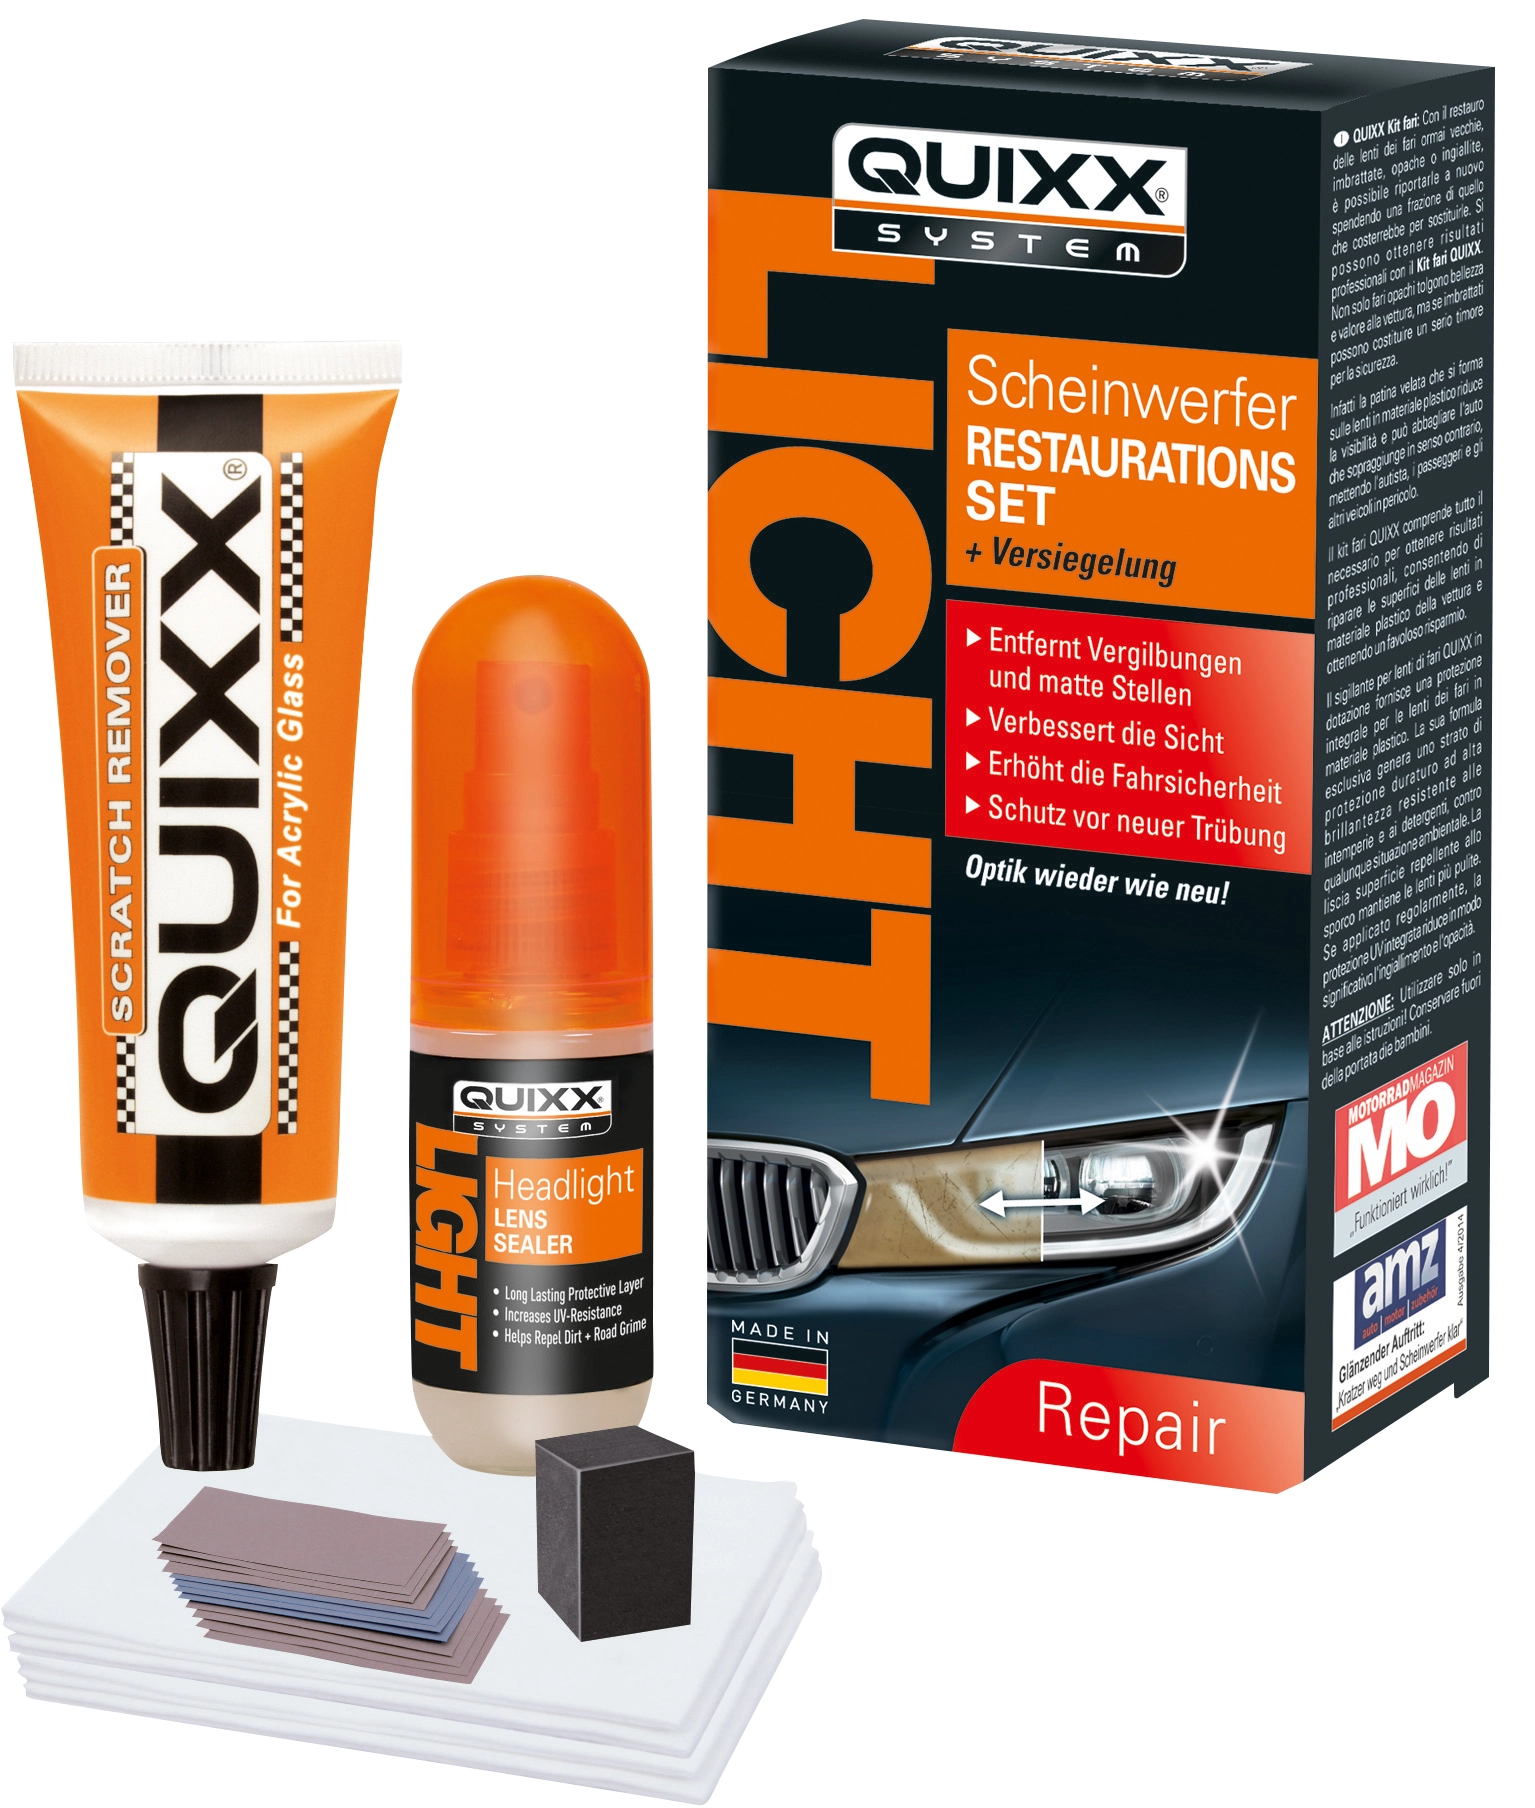 QUIXX Scheinwerfer-Restaurations-Kit 50g kaufen bei OBI